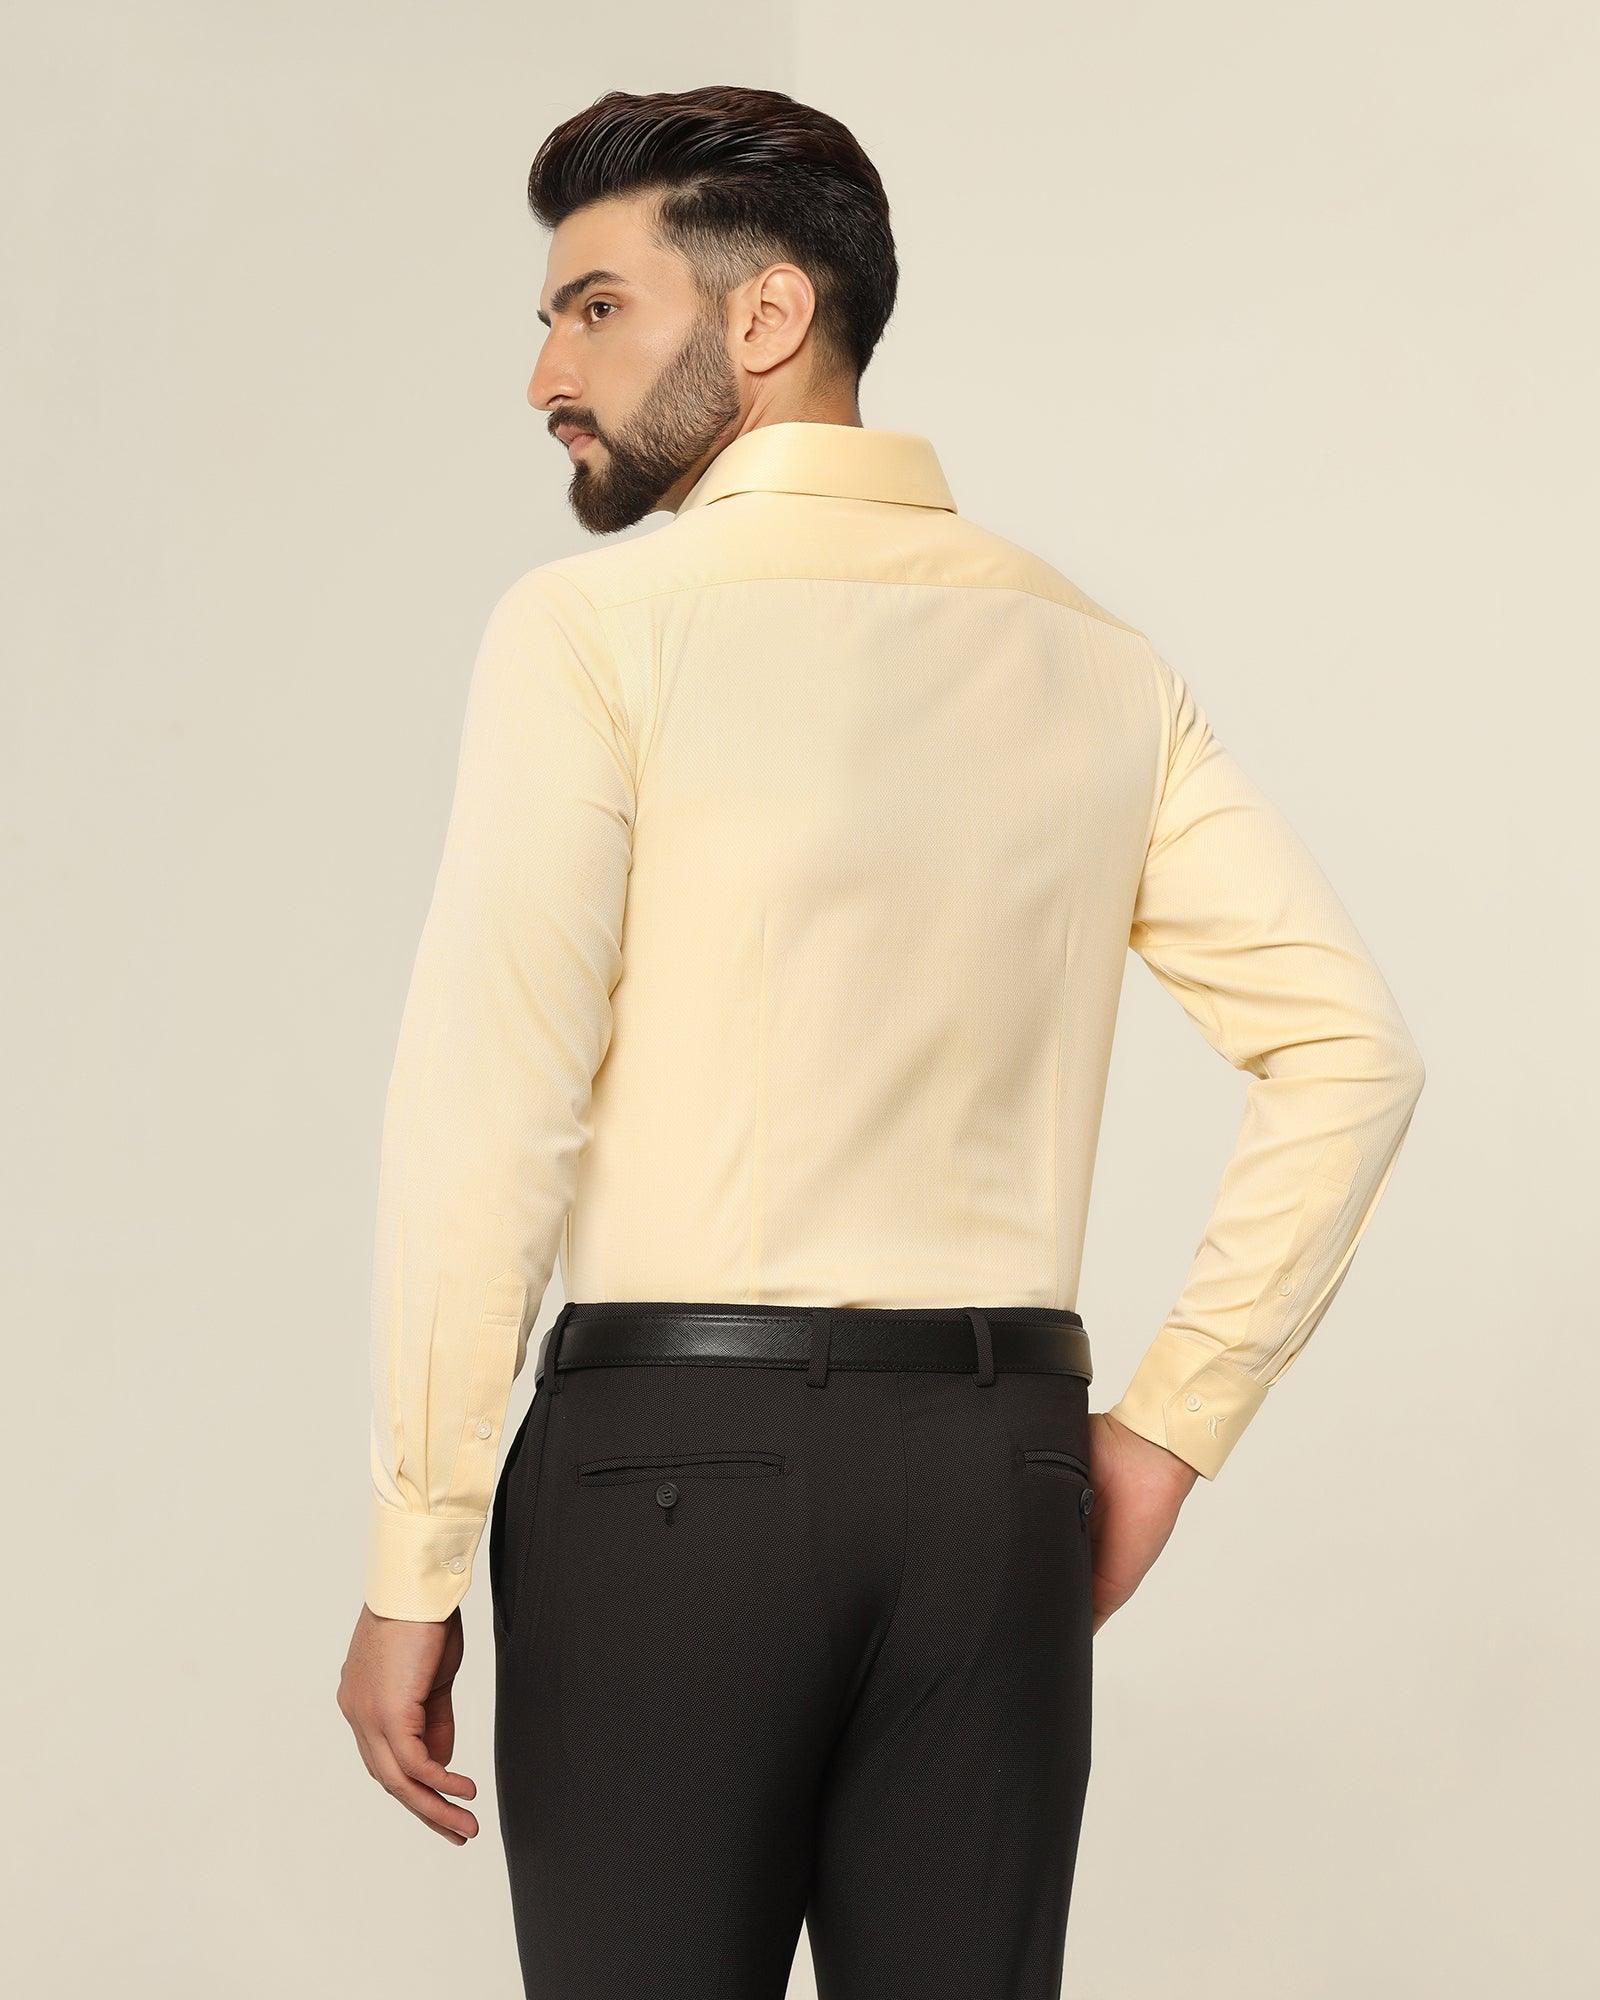 Temptech Formal Yellow Textured Shirt - Pound